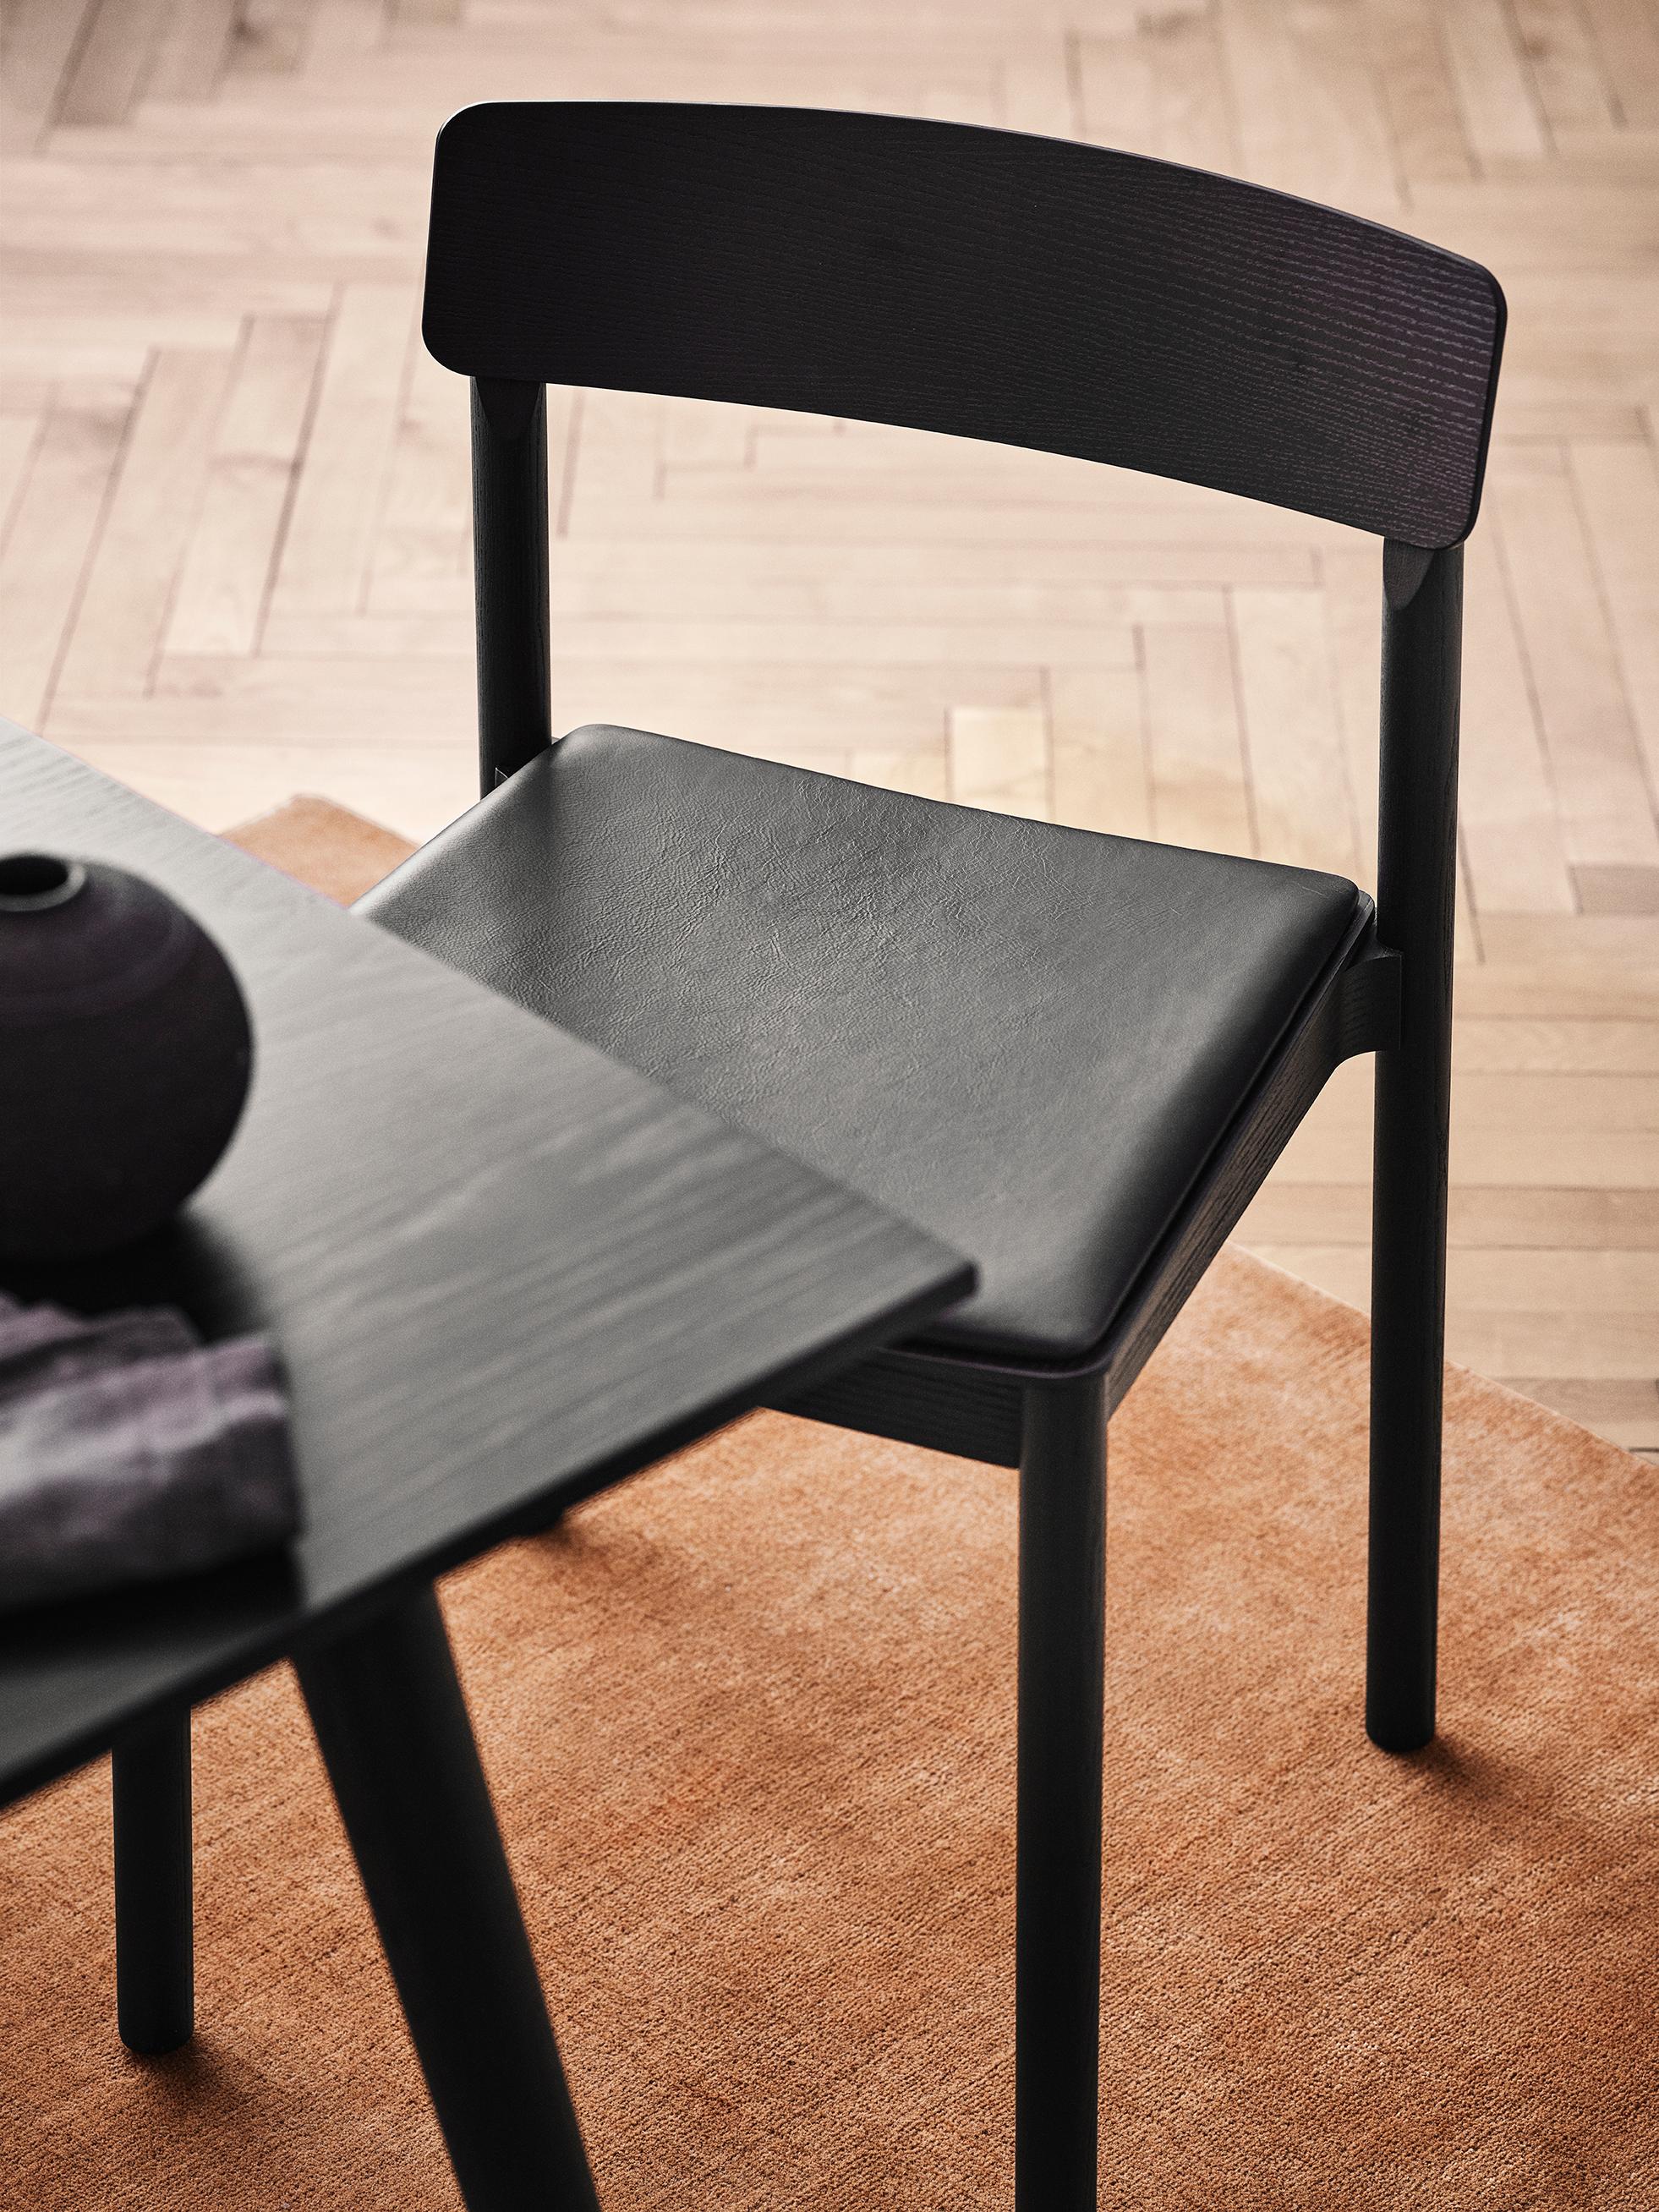 Dieser nach dem Betty-Nansen-Theater in Kopenhagen benannte Stuhl zeichnet sich durch eine besonders langlebige Konstruktion aus. 
Das schlichte Design mit gepolsterter Sitzfläche verspricht höchsten Komfort.

Der Stuhl ist aus Massivholz gefertigt